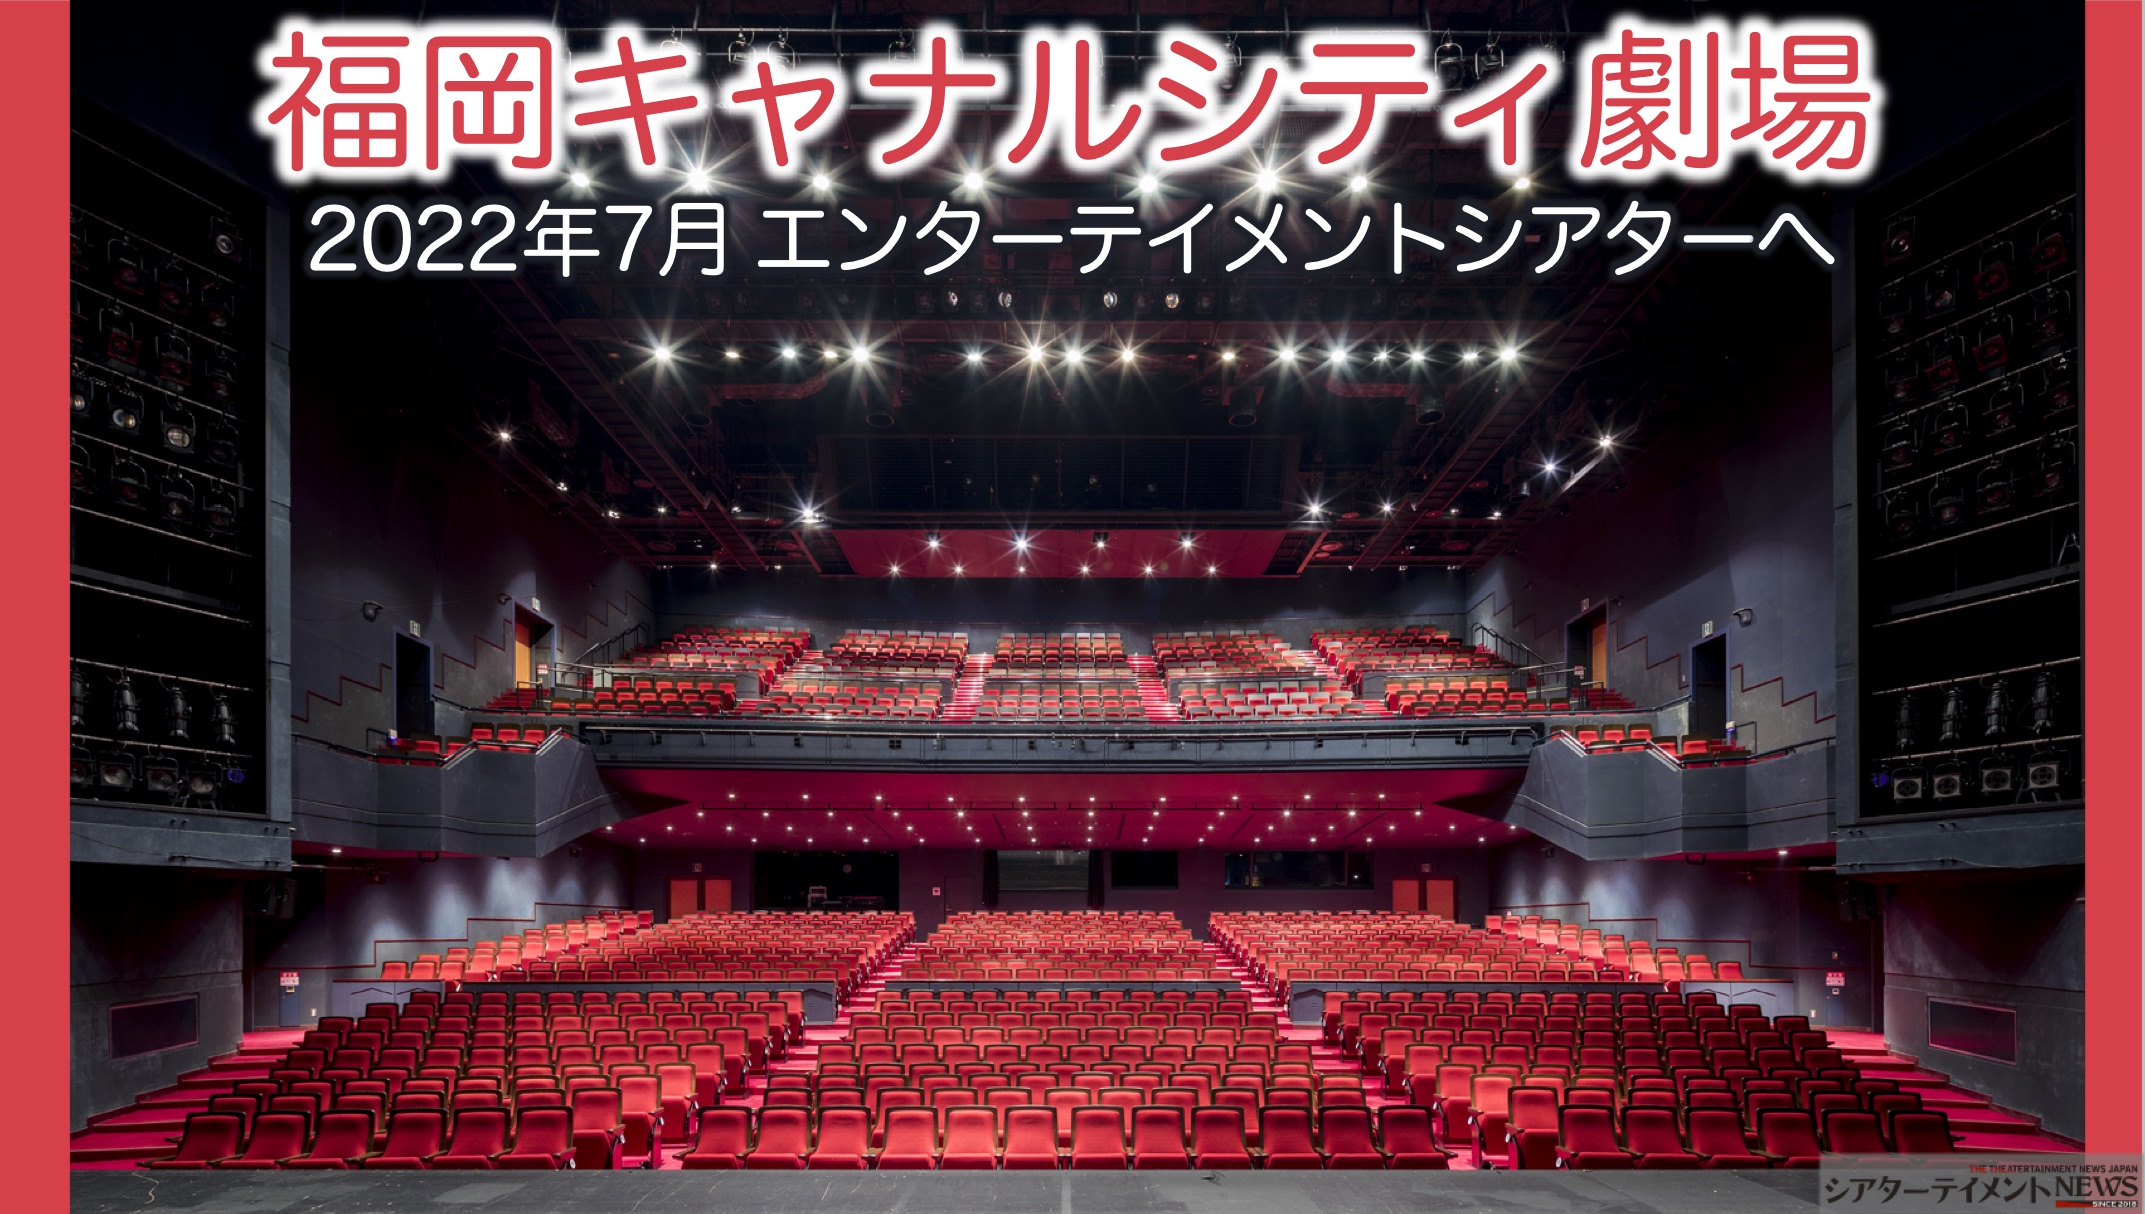 福岡 キャナルシティ劇場 2022年7月、多彩な演目が楽しめる ...